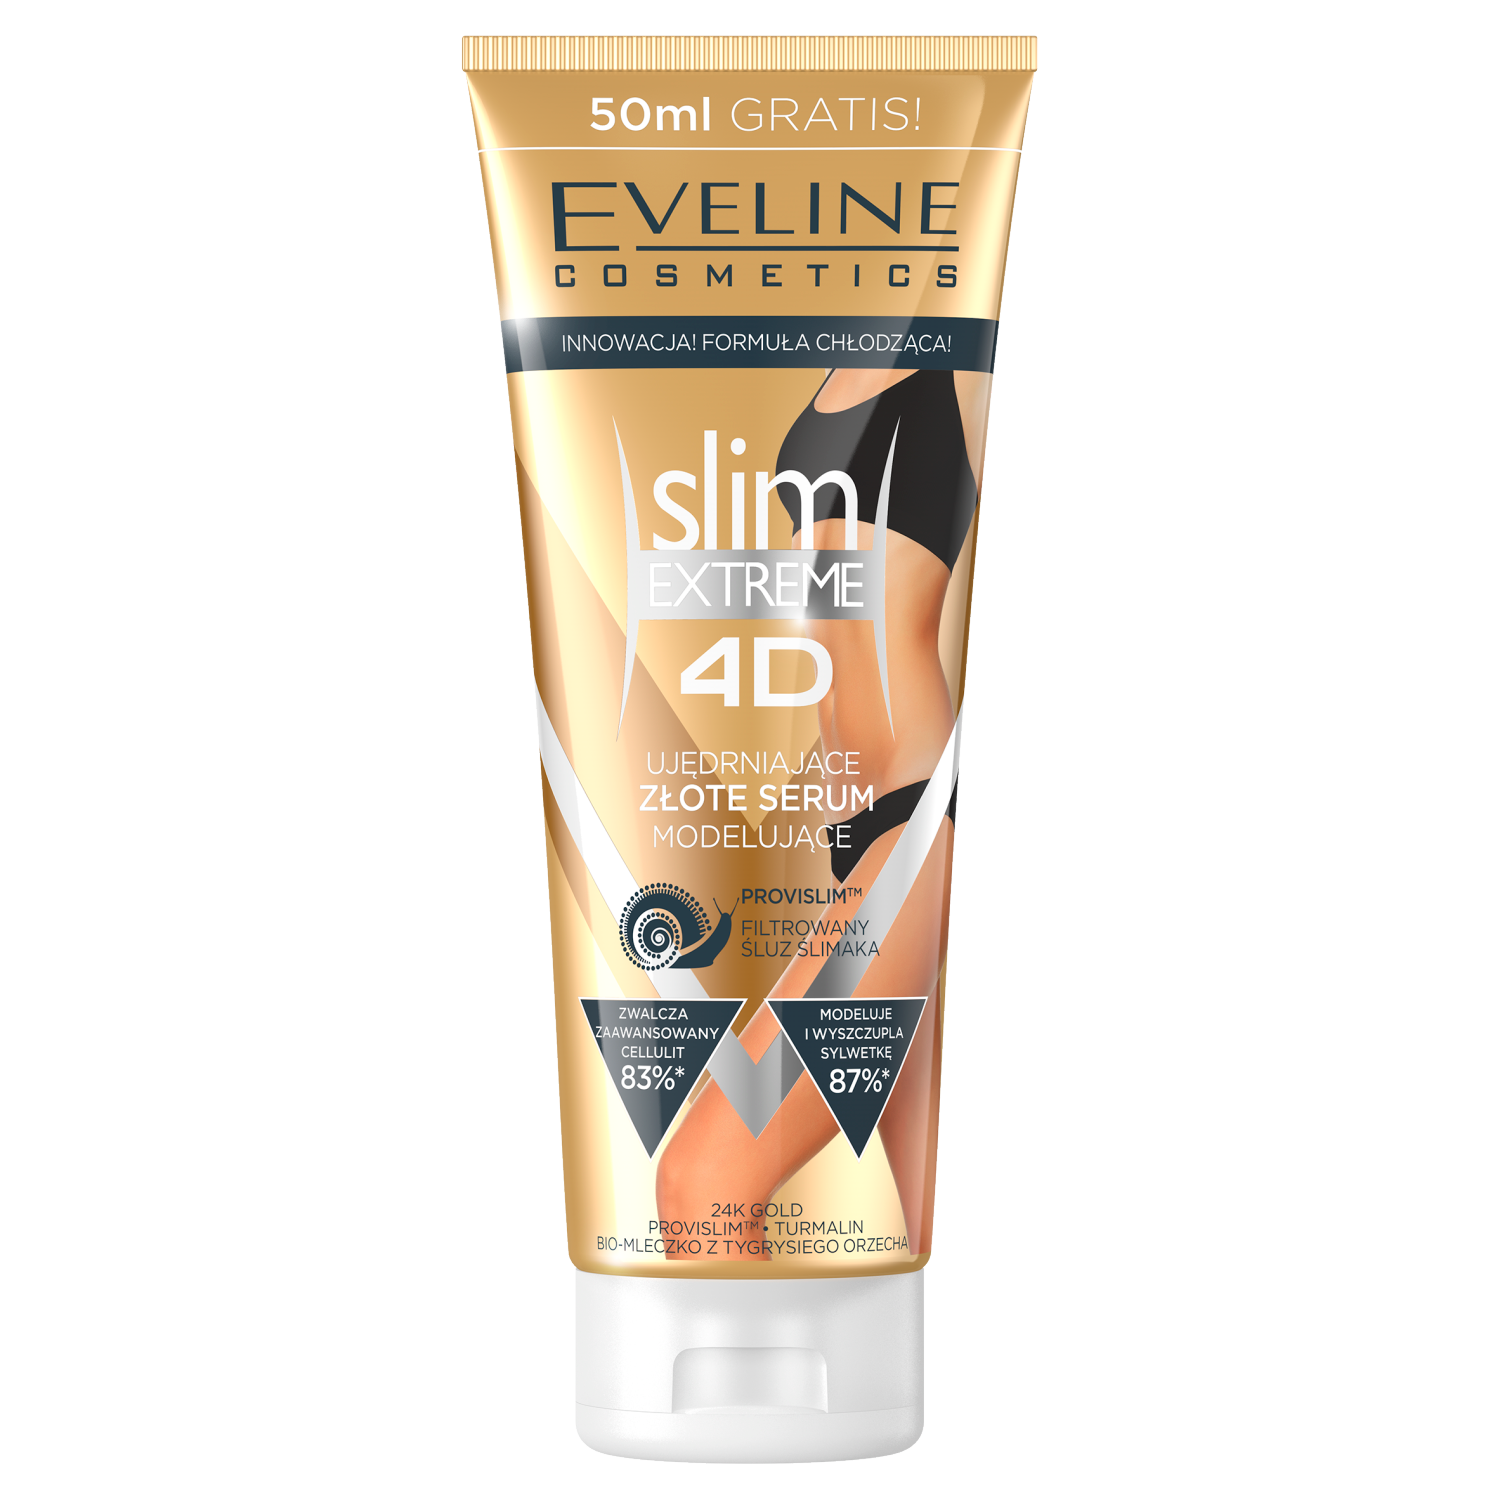 Eveline Cosmetics Slim Extreme 4D золотая сыворотка для похудения и моделирования тела, 250 мл